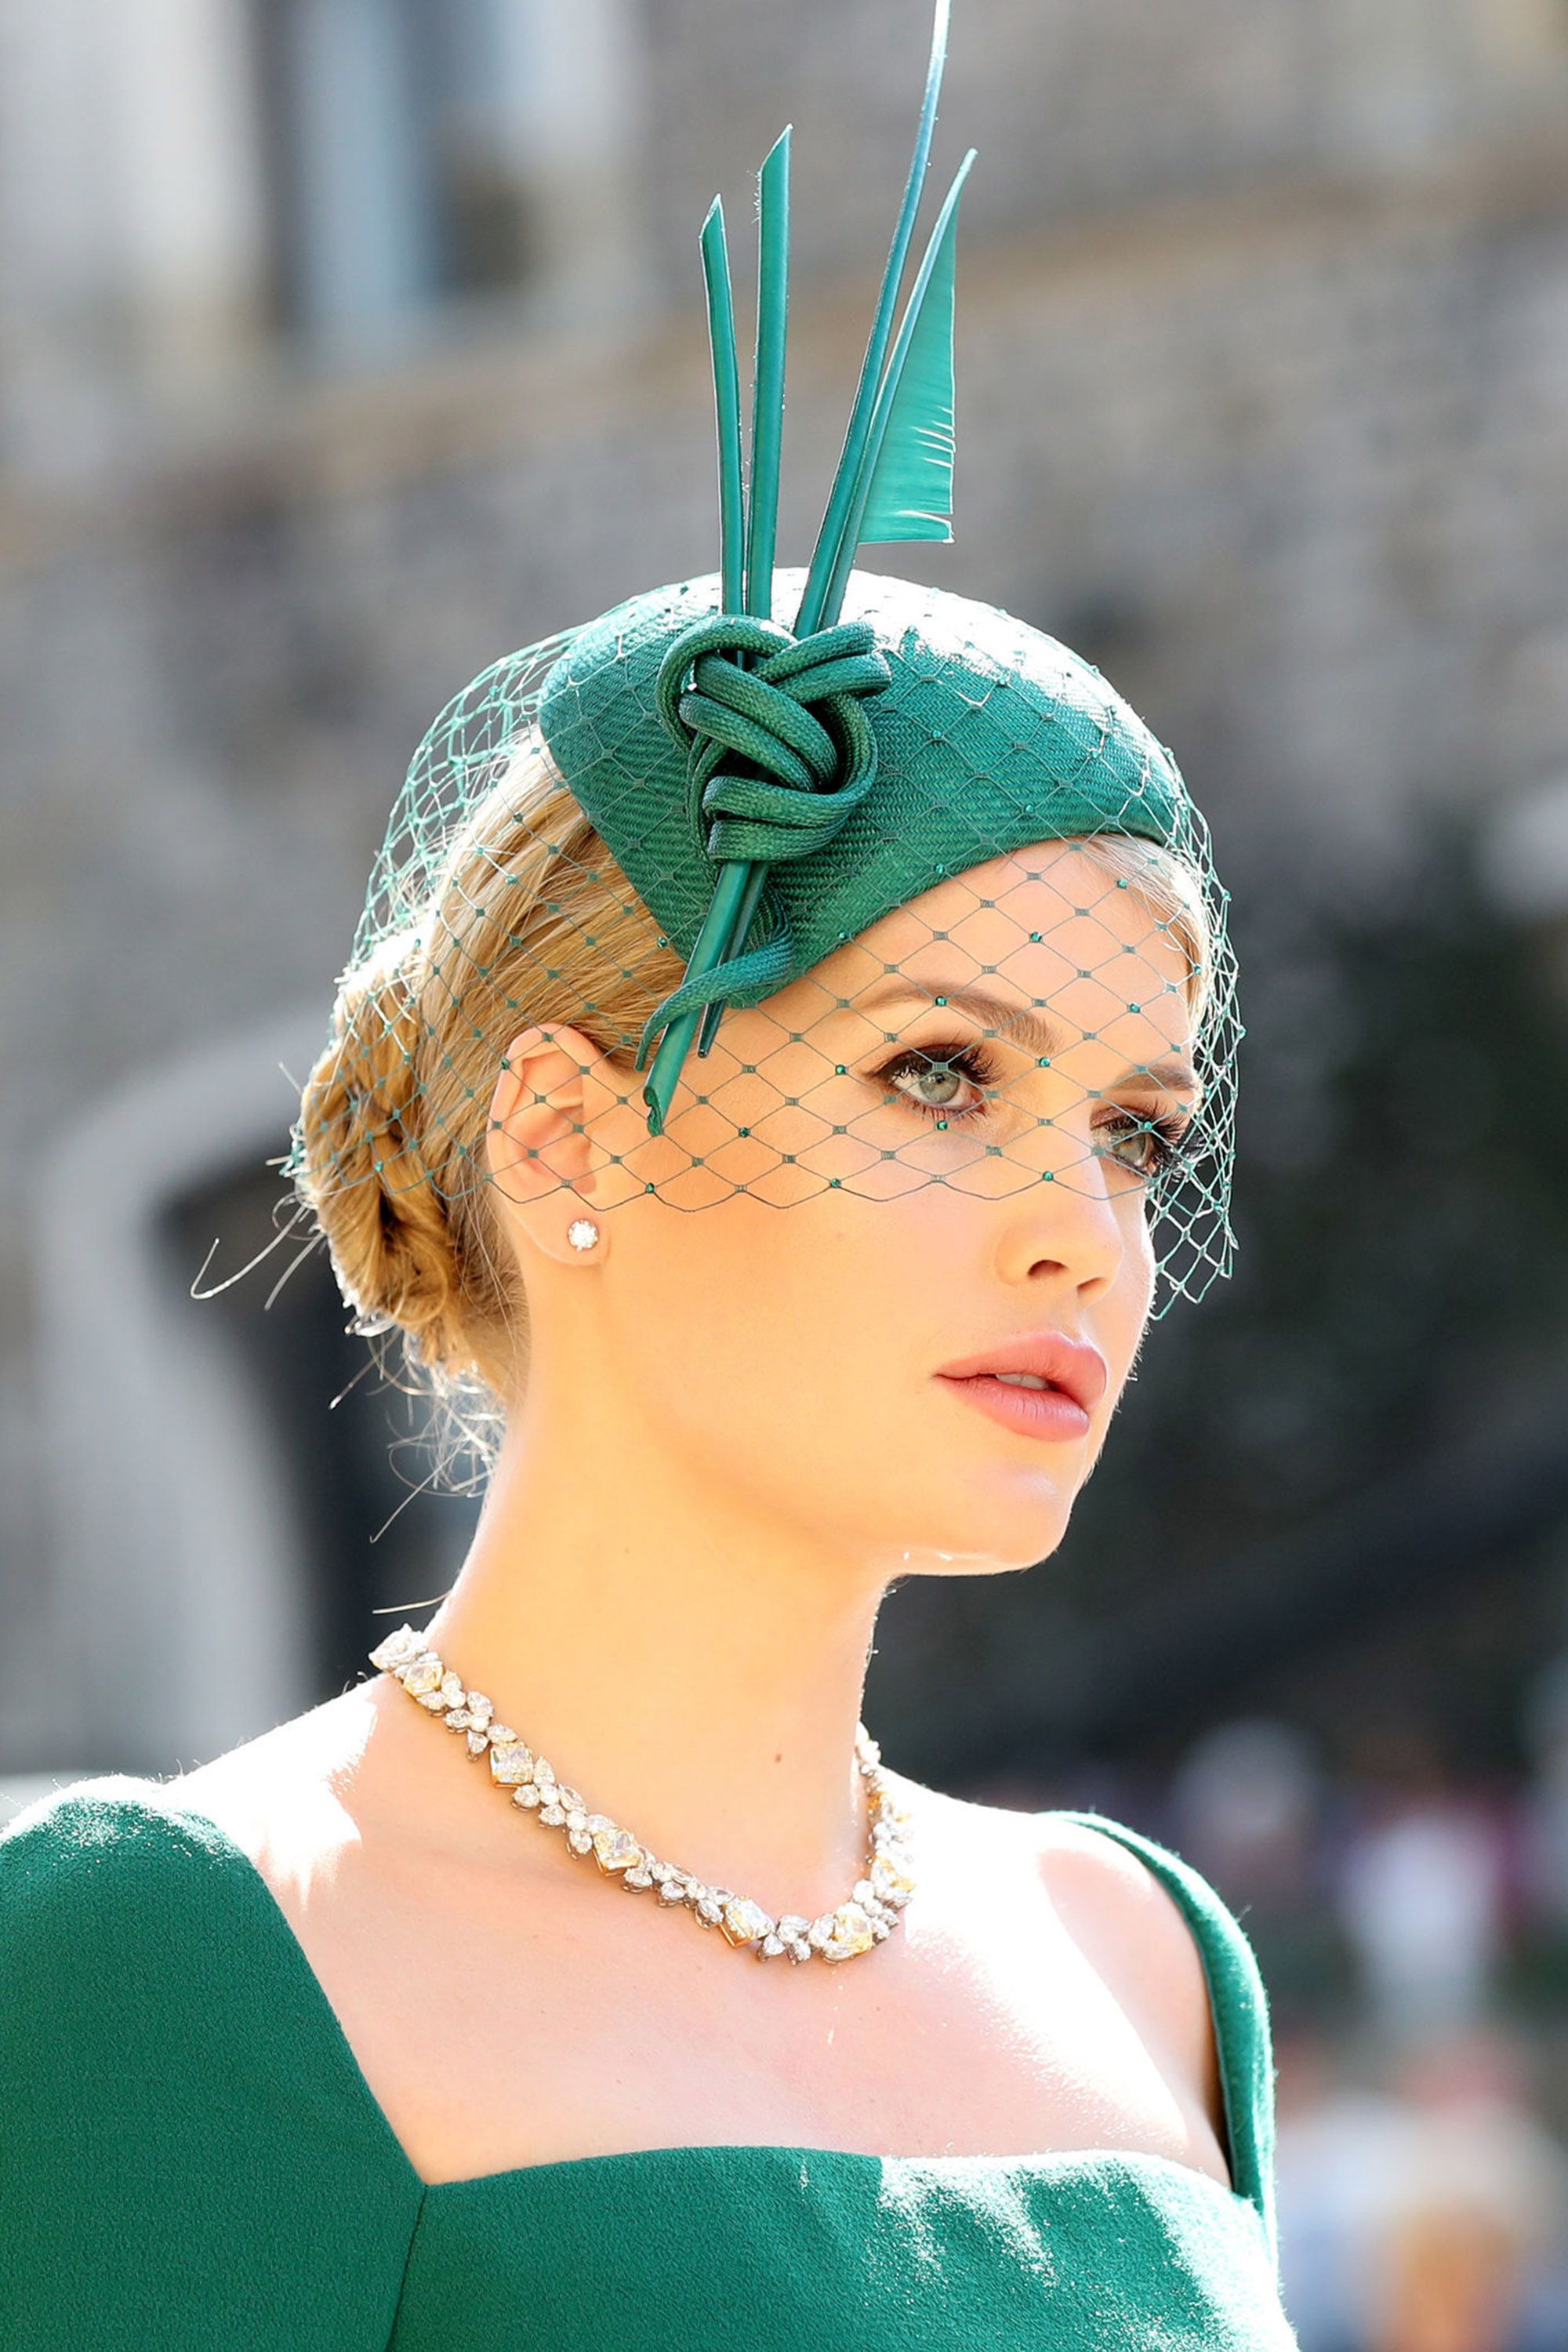 Royal Wedding Fascinators Hats And Hatinators At Meghan And Harrys